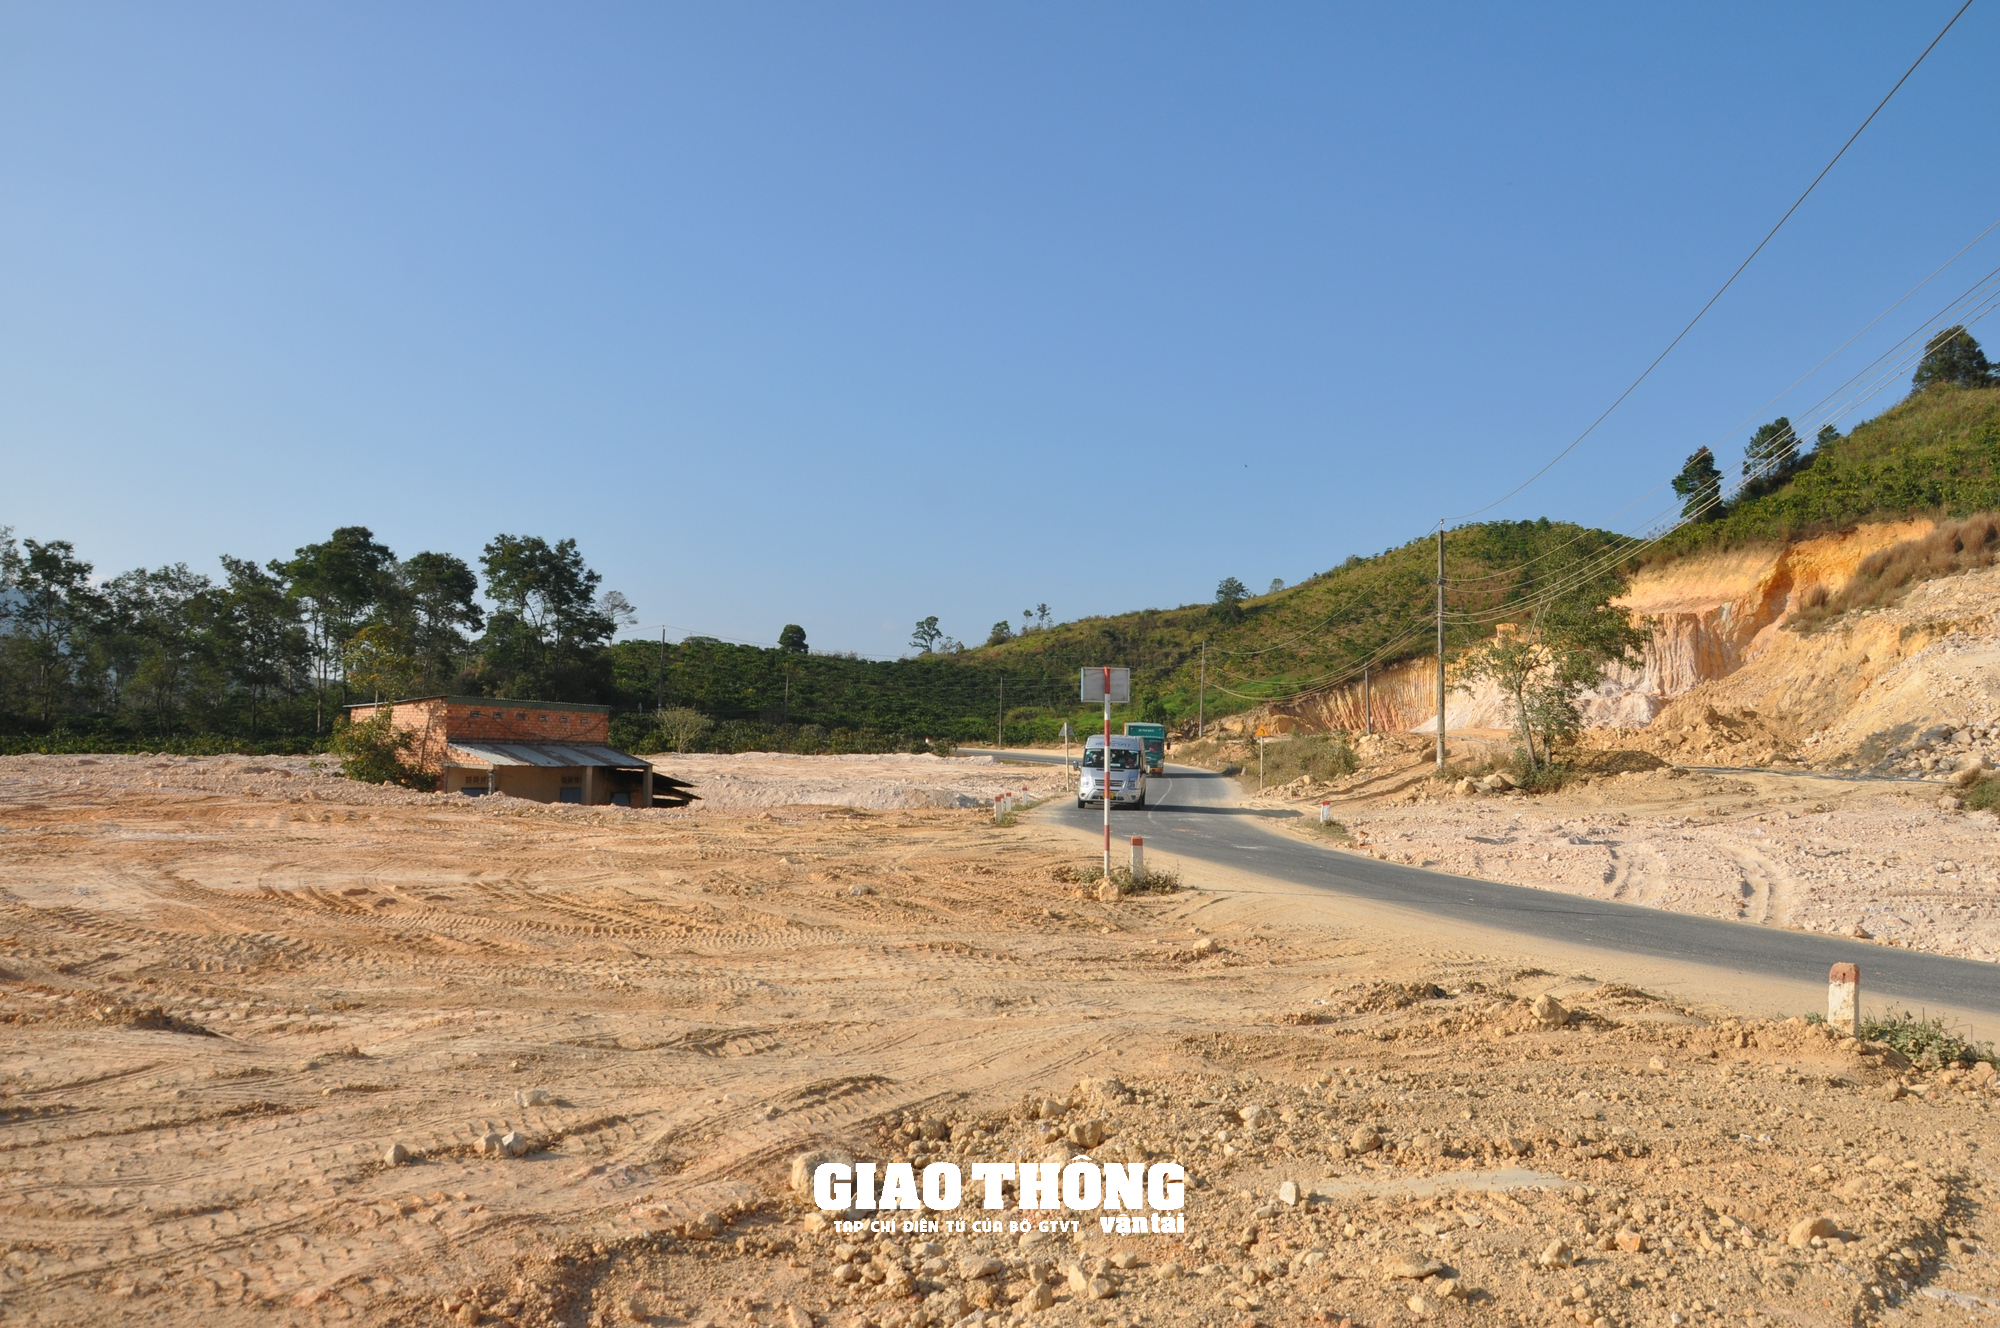 Nhức nhối nạn đào, san lấp mặt bằng xâm phạm hành lang tuyến QL27, ĐT724 ở Lâm Đồng - Ảnh 1.